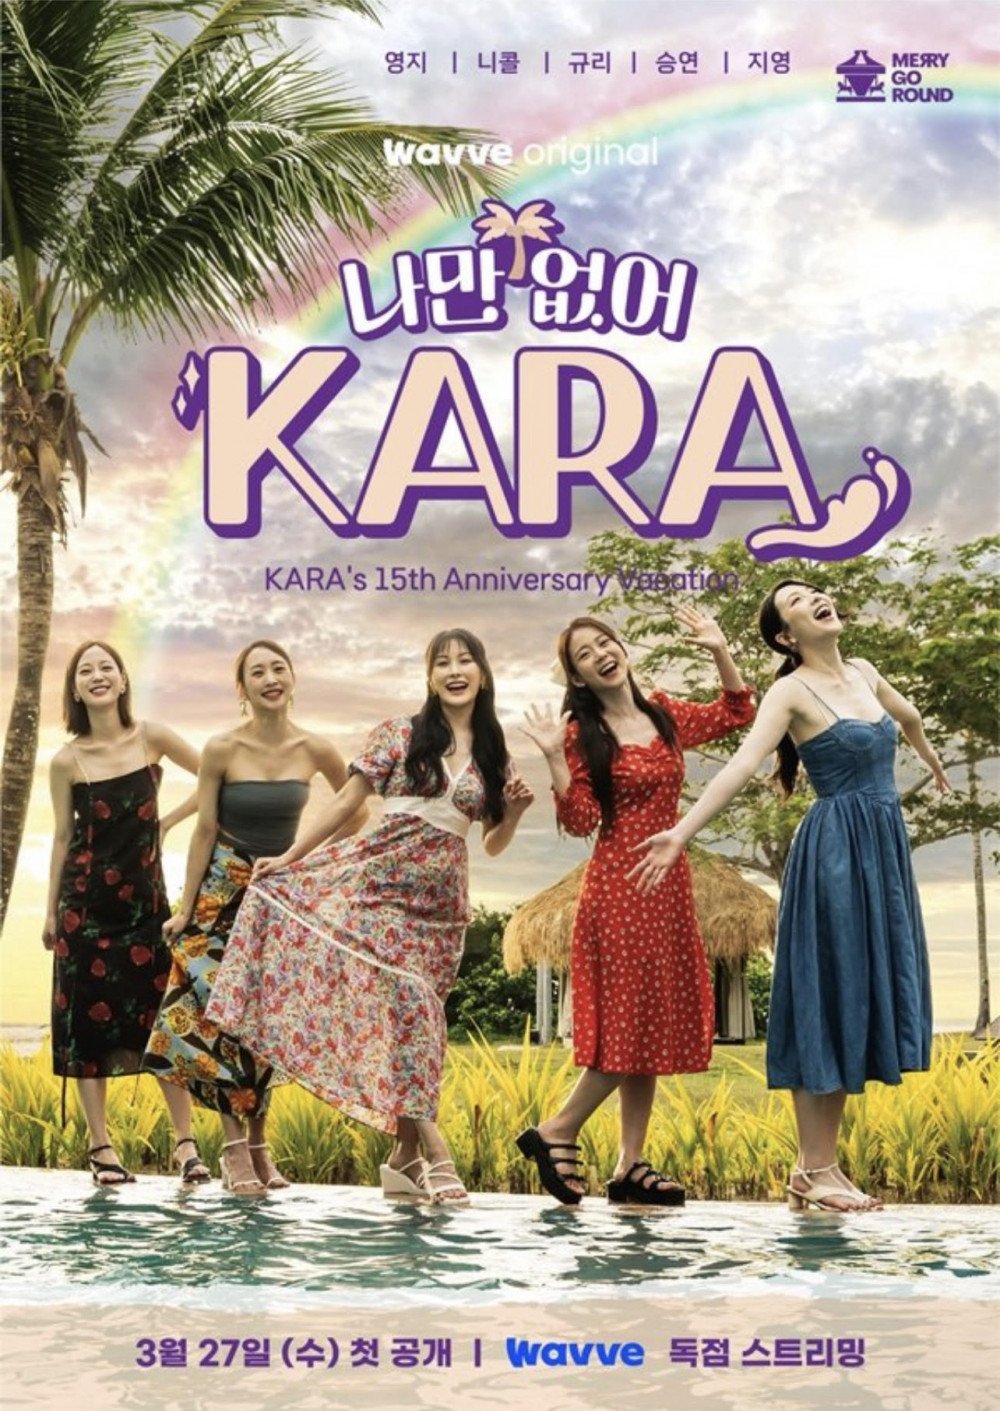 KARA возвращаются с новым реалити-шоу в честь 15-летия со дня дебюта